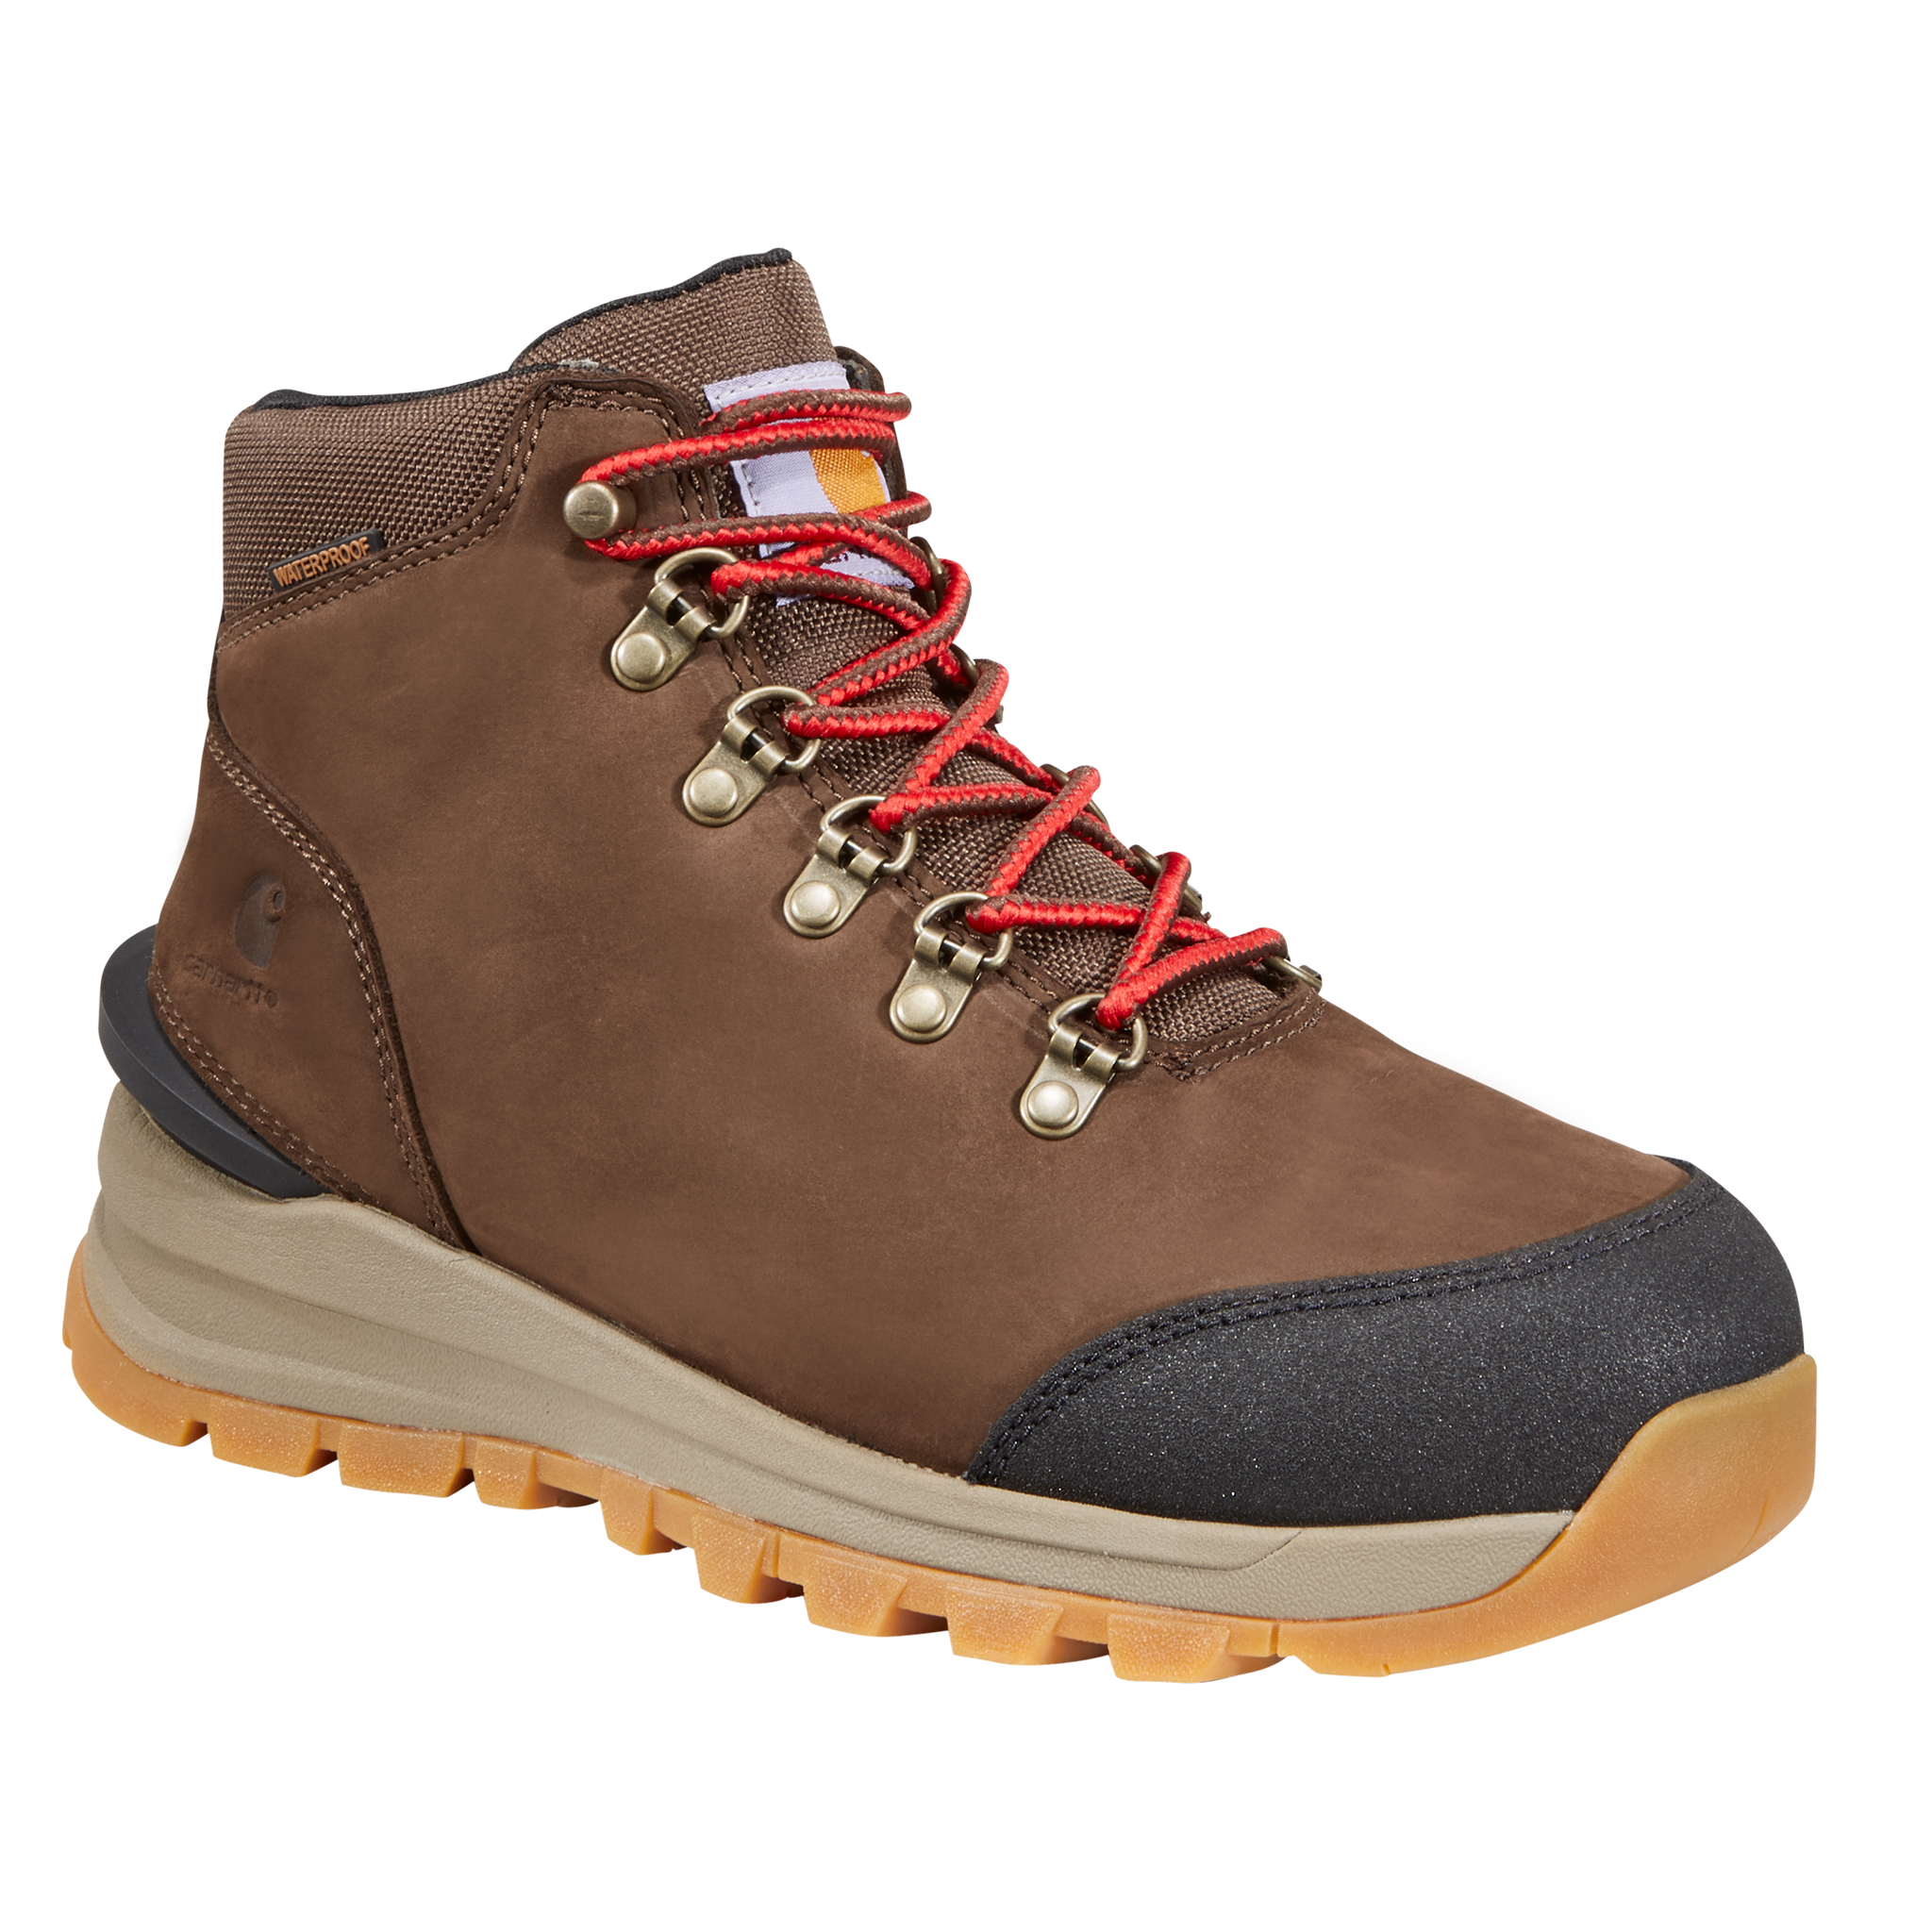 Carhartt Gilmore Waterproof Hiking Boots for Ladies - Dark Brown Nubuck - 6.5M